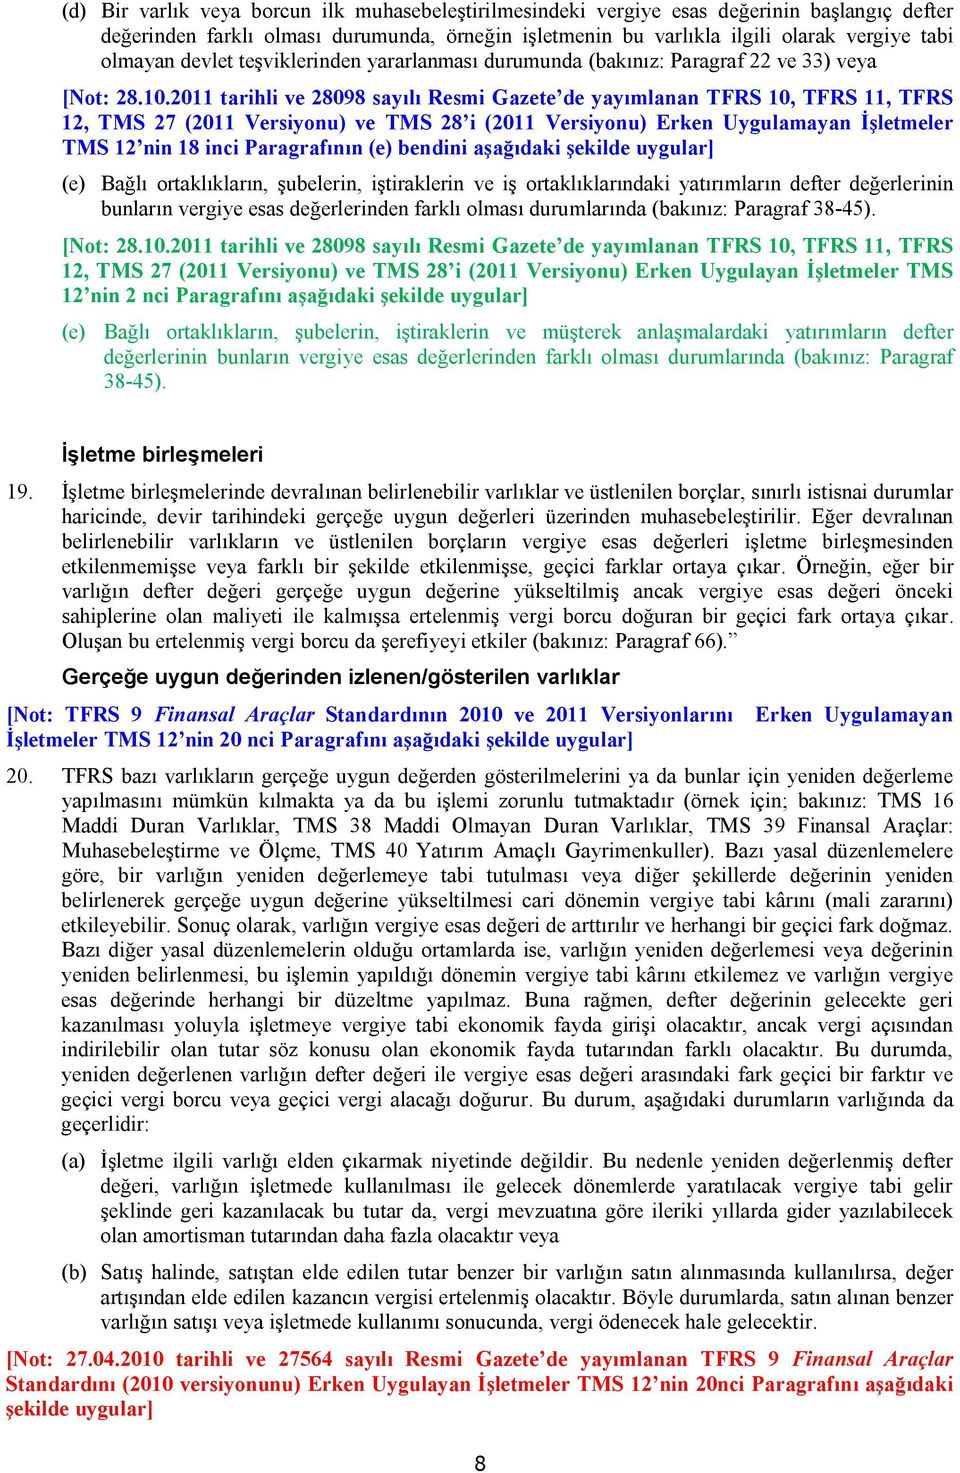 2011 tarihli ve 28098 sayılı Resmi Gazete de yayımlanan TFRS 10, TFRS 11, TFRS 12, TMS 27 (2011 Versiyonu) ve TMS 28 i (2011 Versiyonu) Erken Uygulamayan İşletmeler TMS 12 nin 18 inci Paragrafının